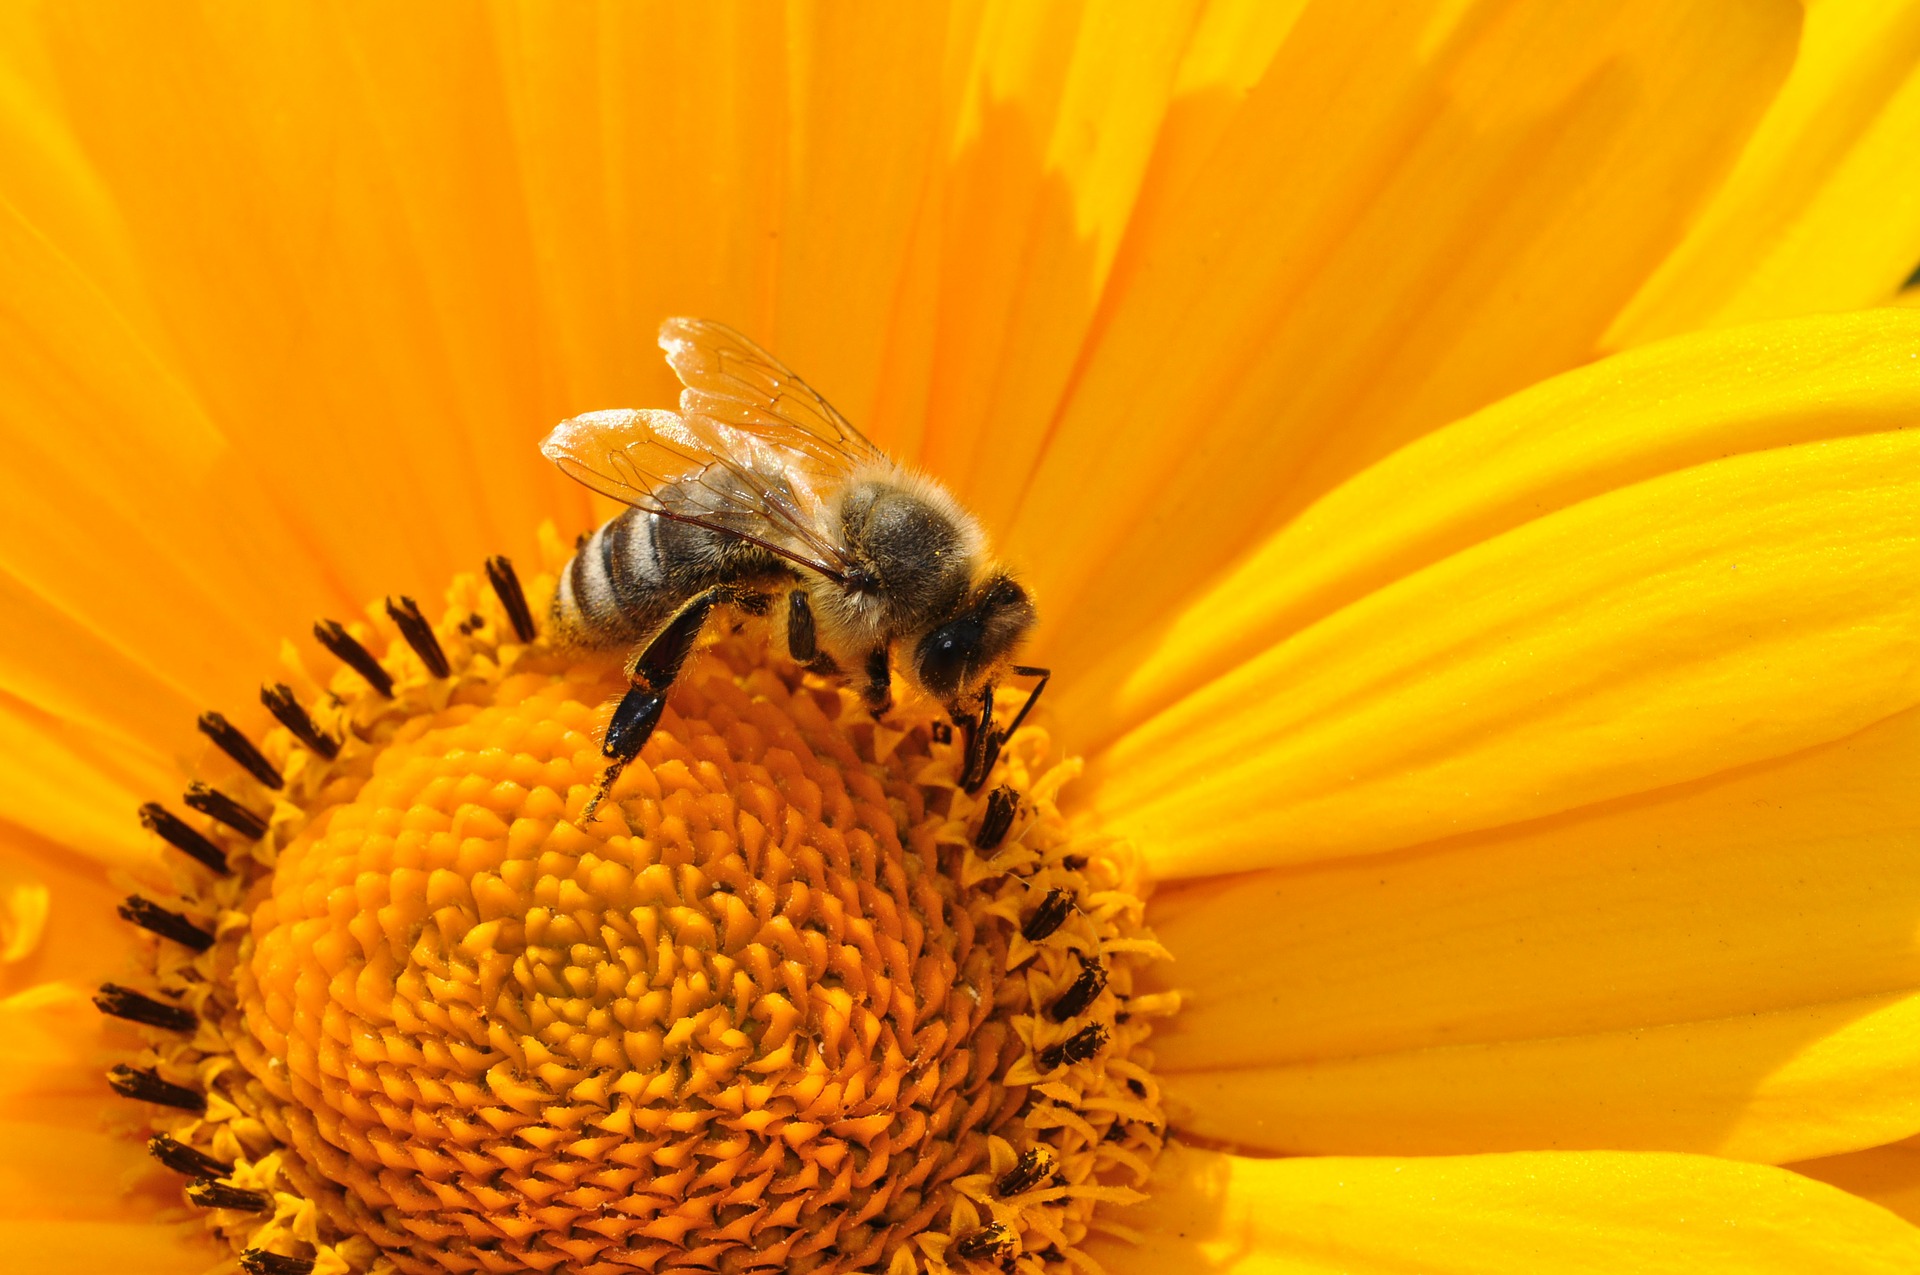 Les associations demandent la suspension immédiate du Sulfoxaflor, pesticide tueur d’abeilles | France Nature Environnement